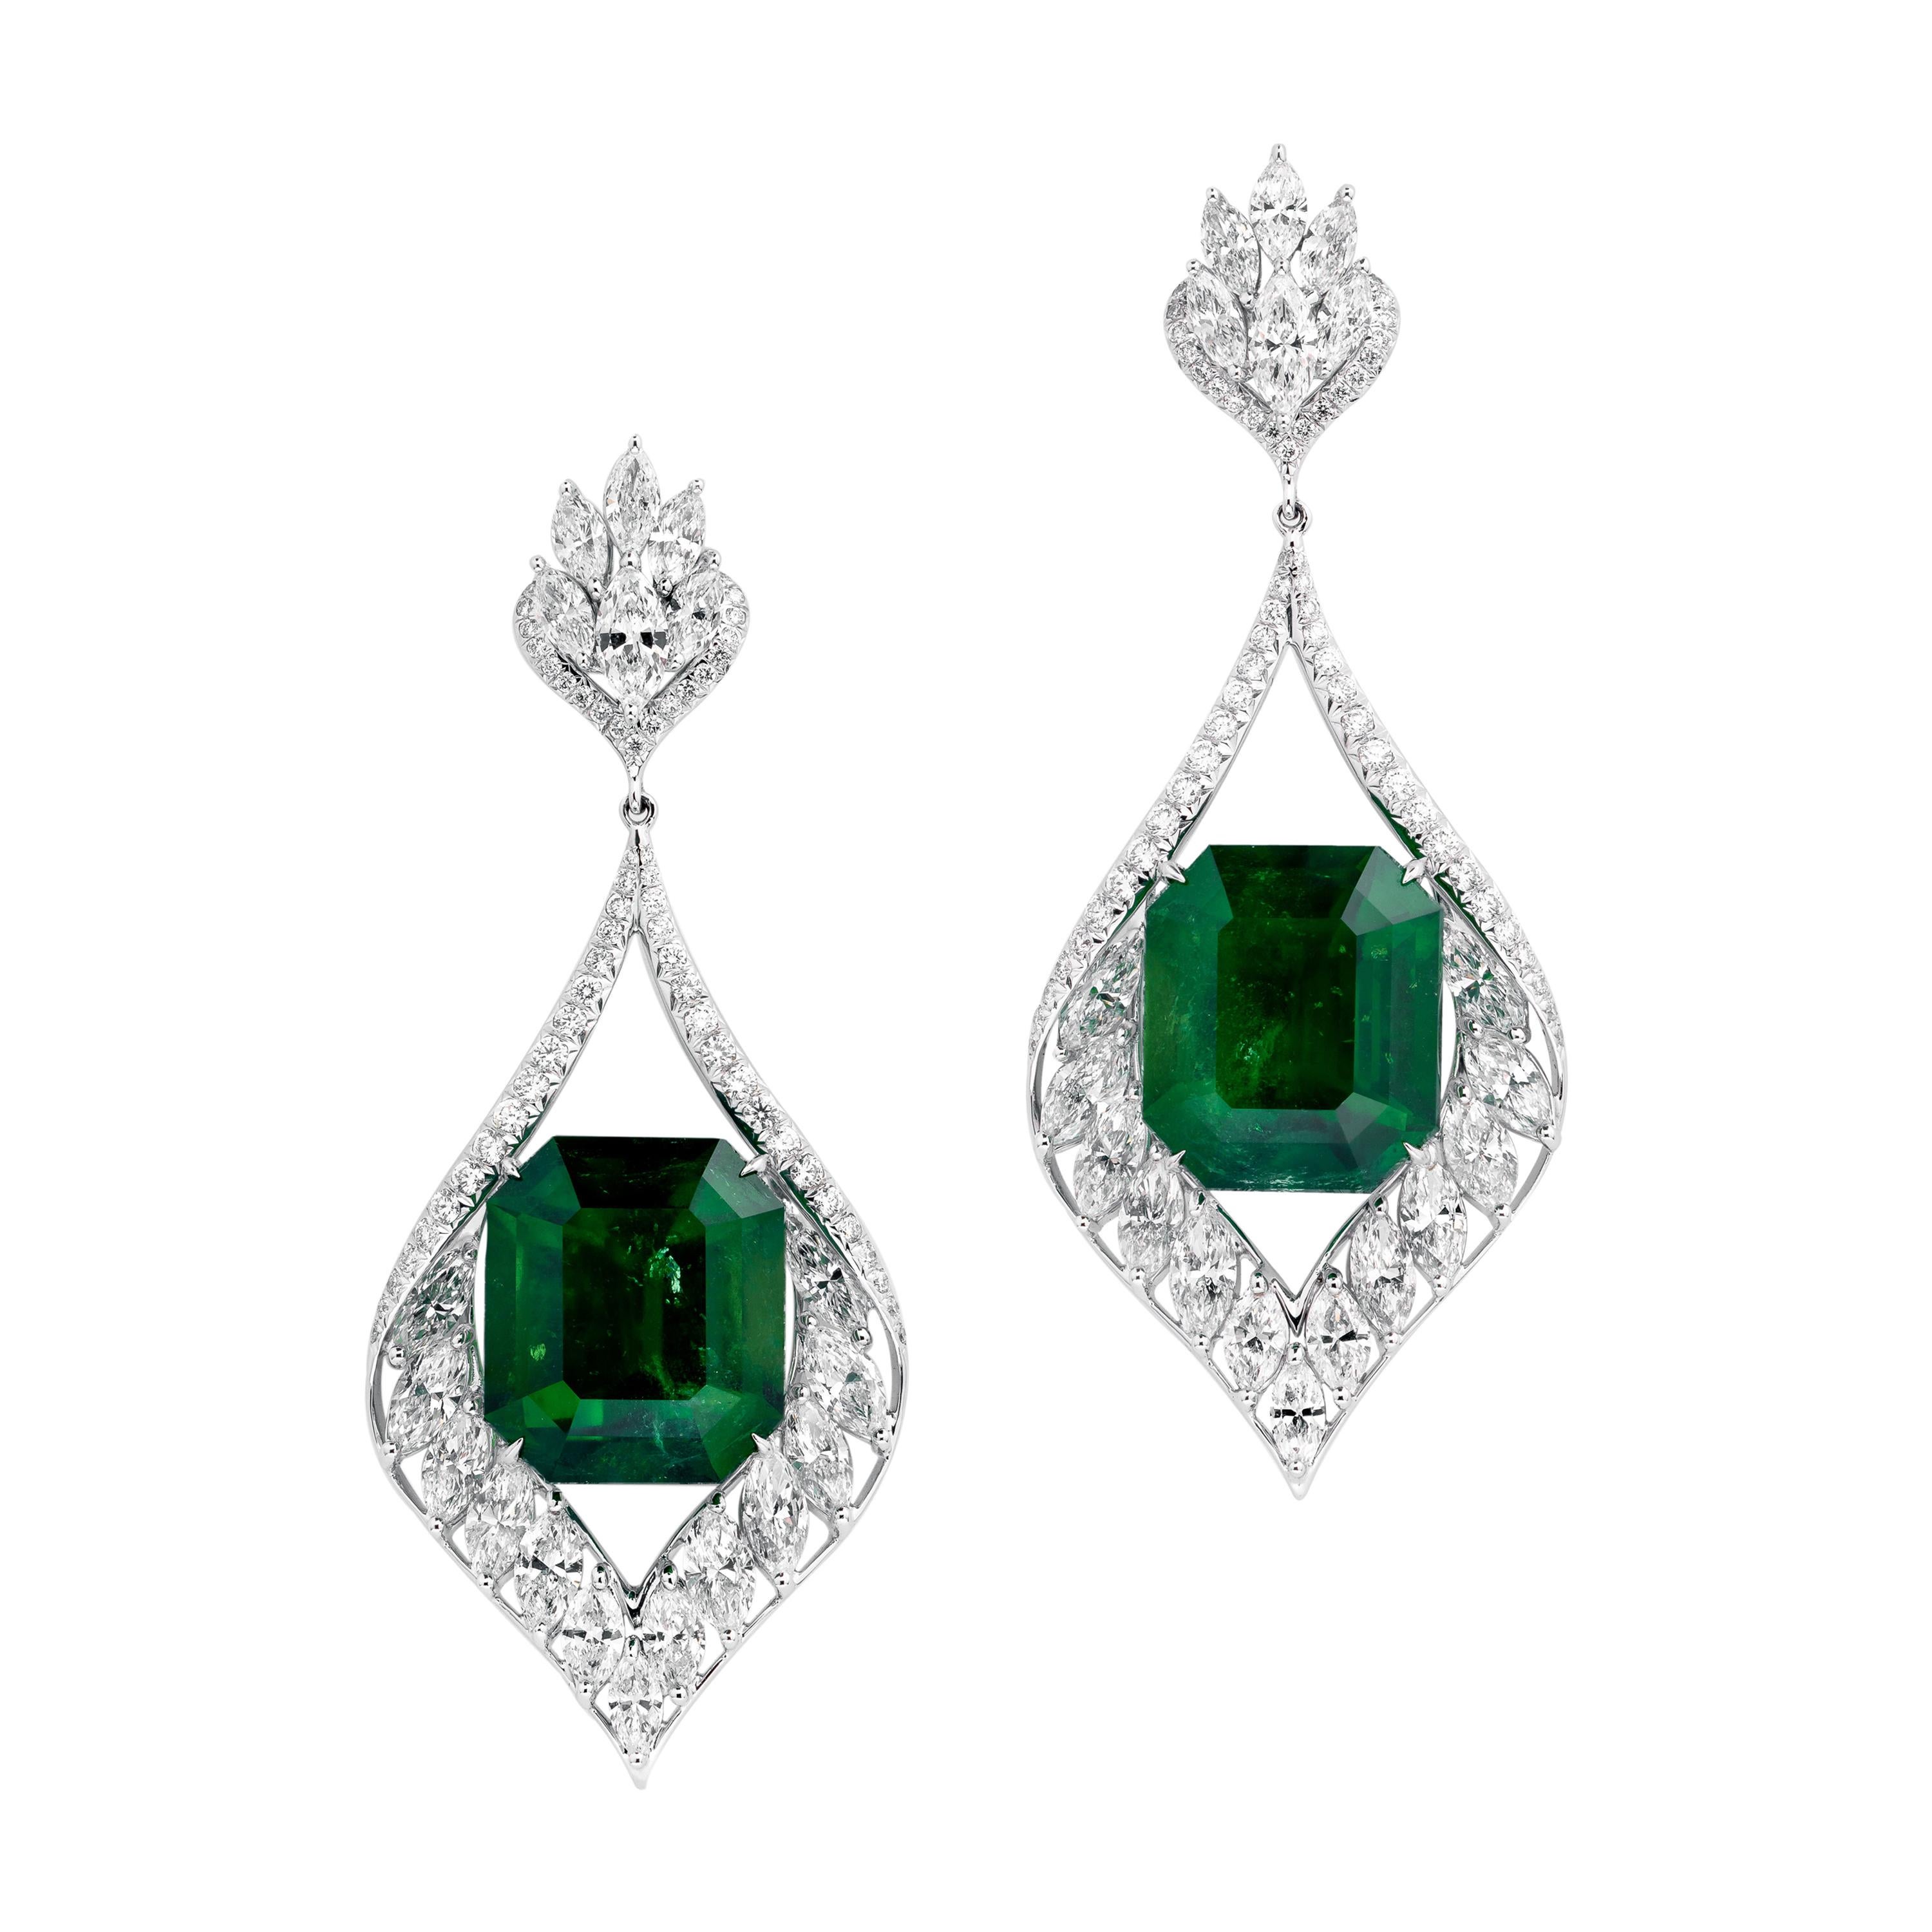 Gubelin Certified 42.62 Carat Colombian Emerald Diamond Earrings in 18K Gold